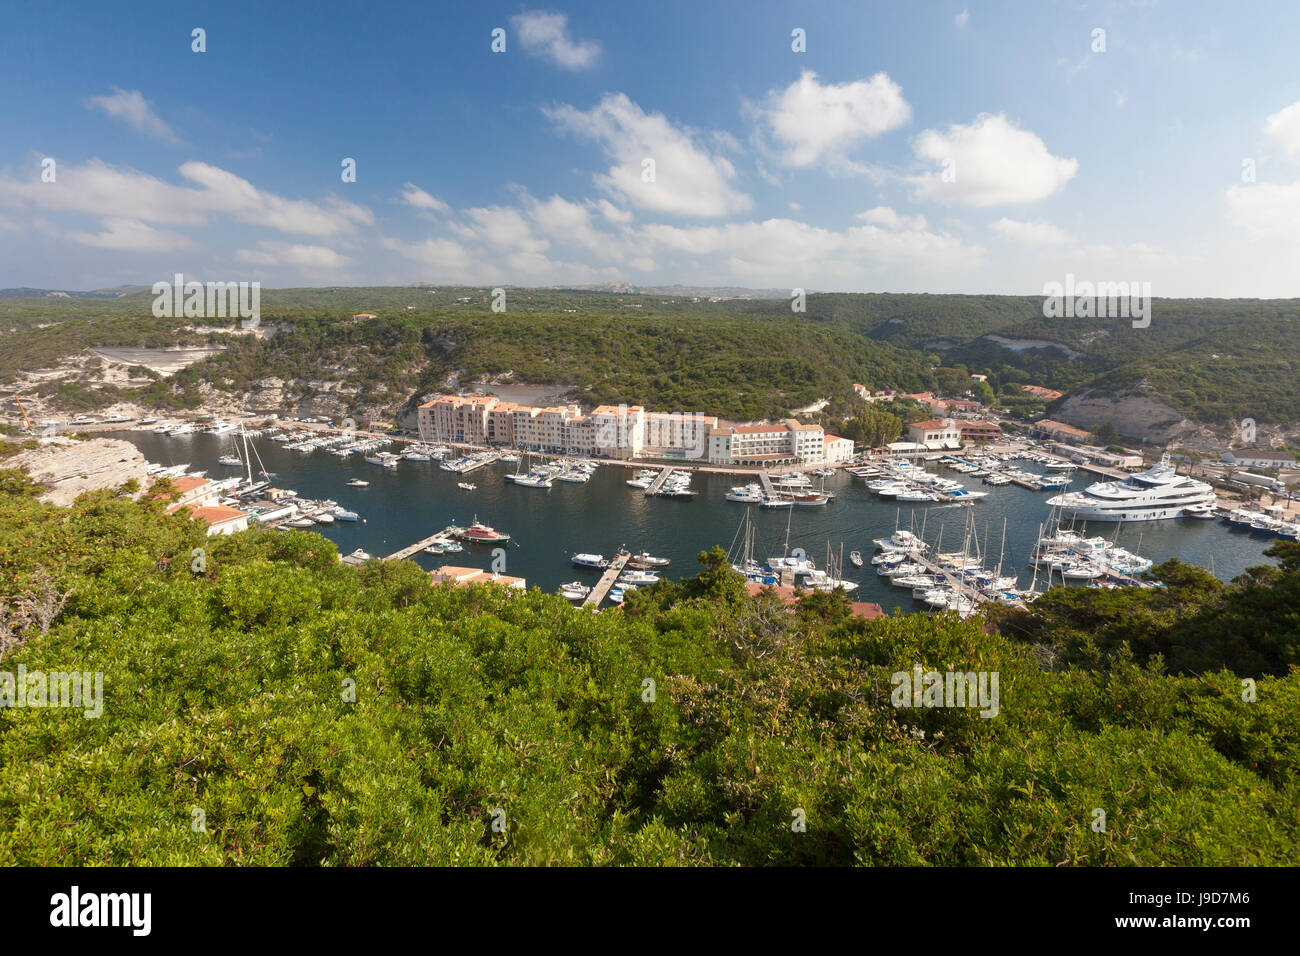 Verde vegetazione incornicia la città medievale e il porto, Bonifacio, Corsica, Francia, Mediterraneo, Europa Foto Stock